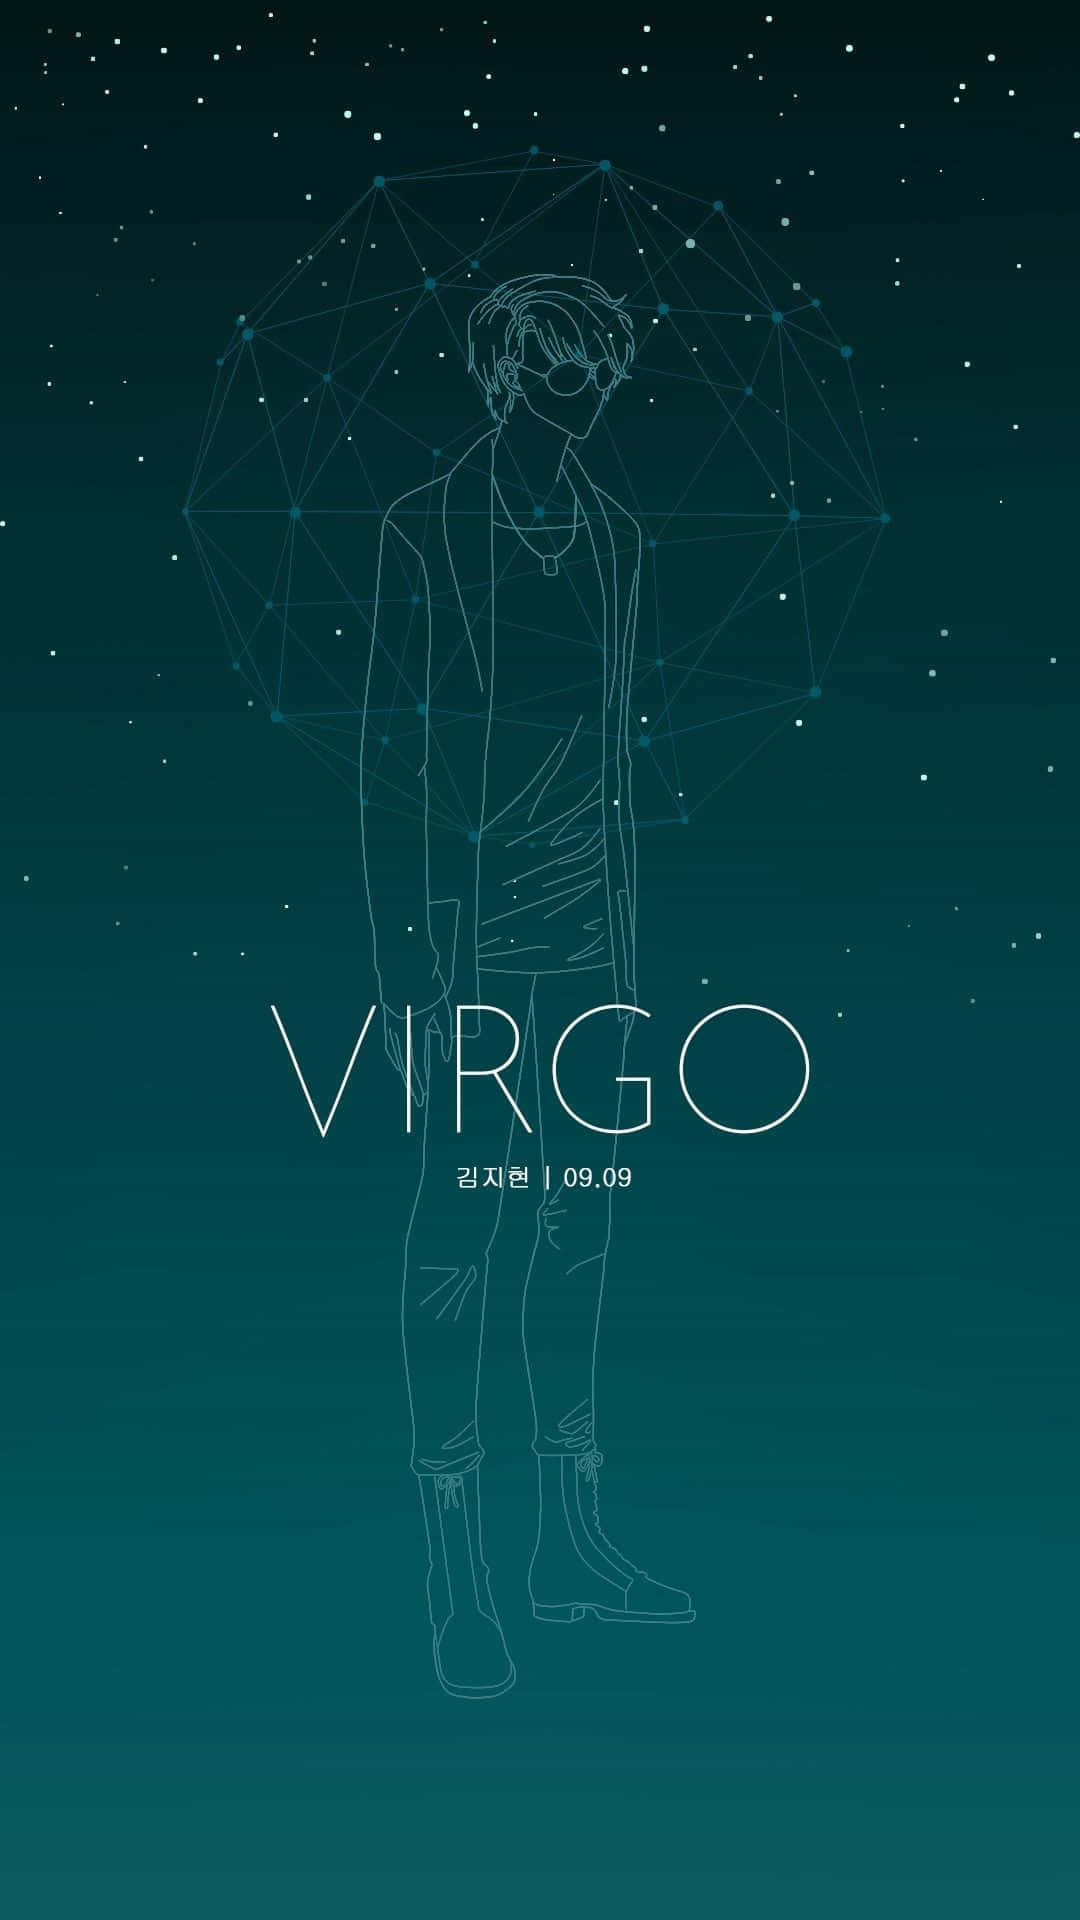 Tapetför Iphone Med Virgo Mystic Messenger Astrology. Wallpaper